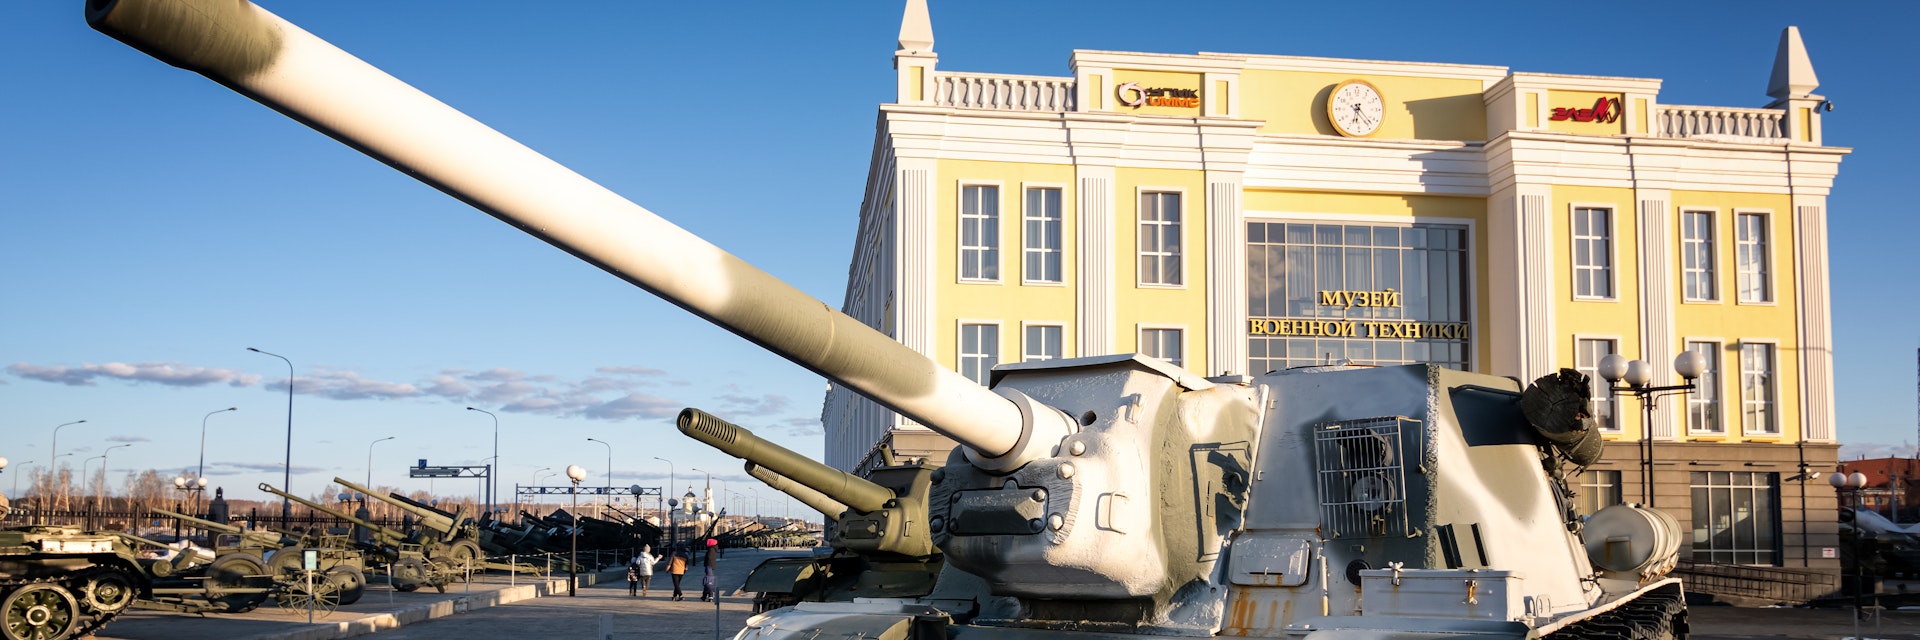 Military equipment-retro exhibit of the Military History Museum, Yekaterinburg, Russia.